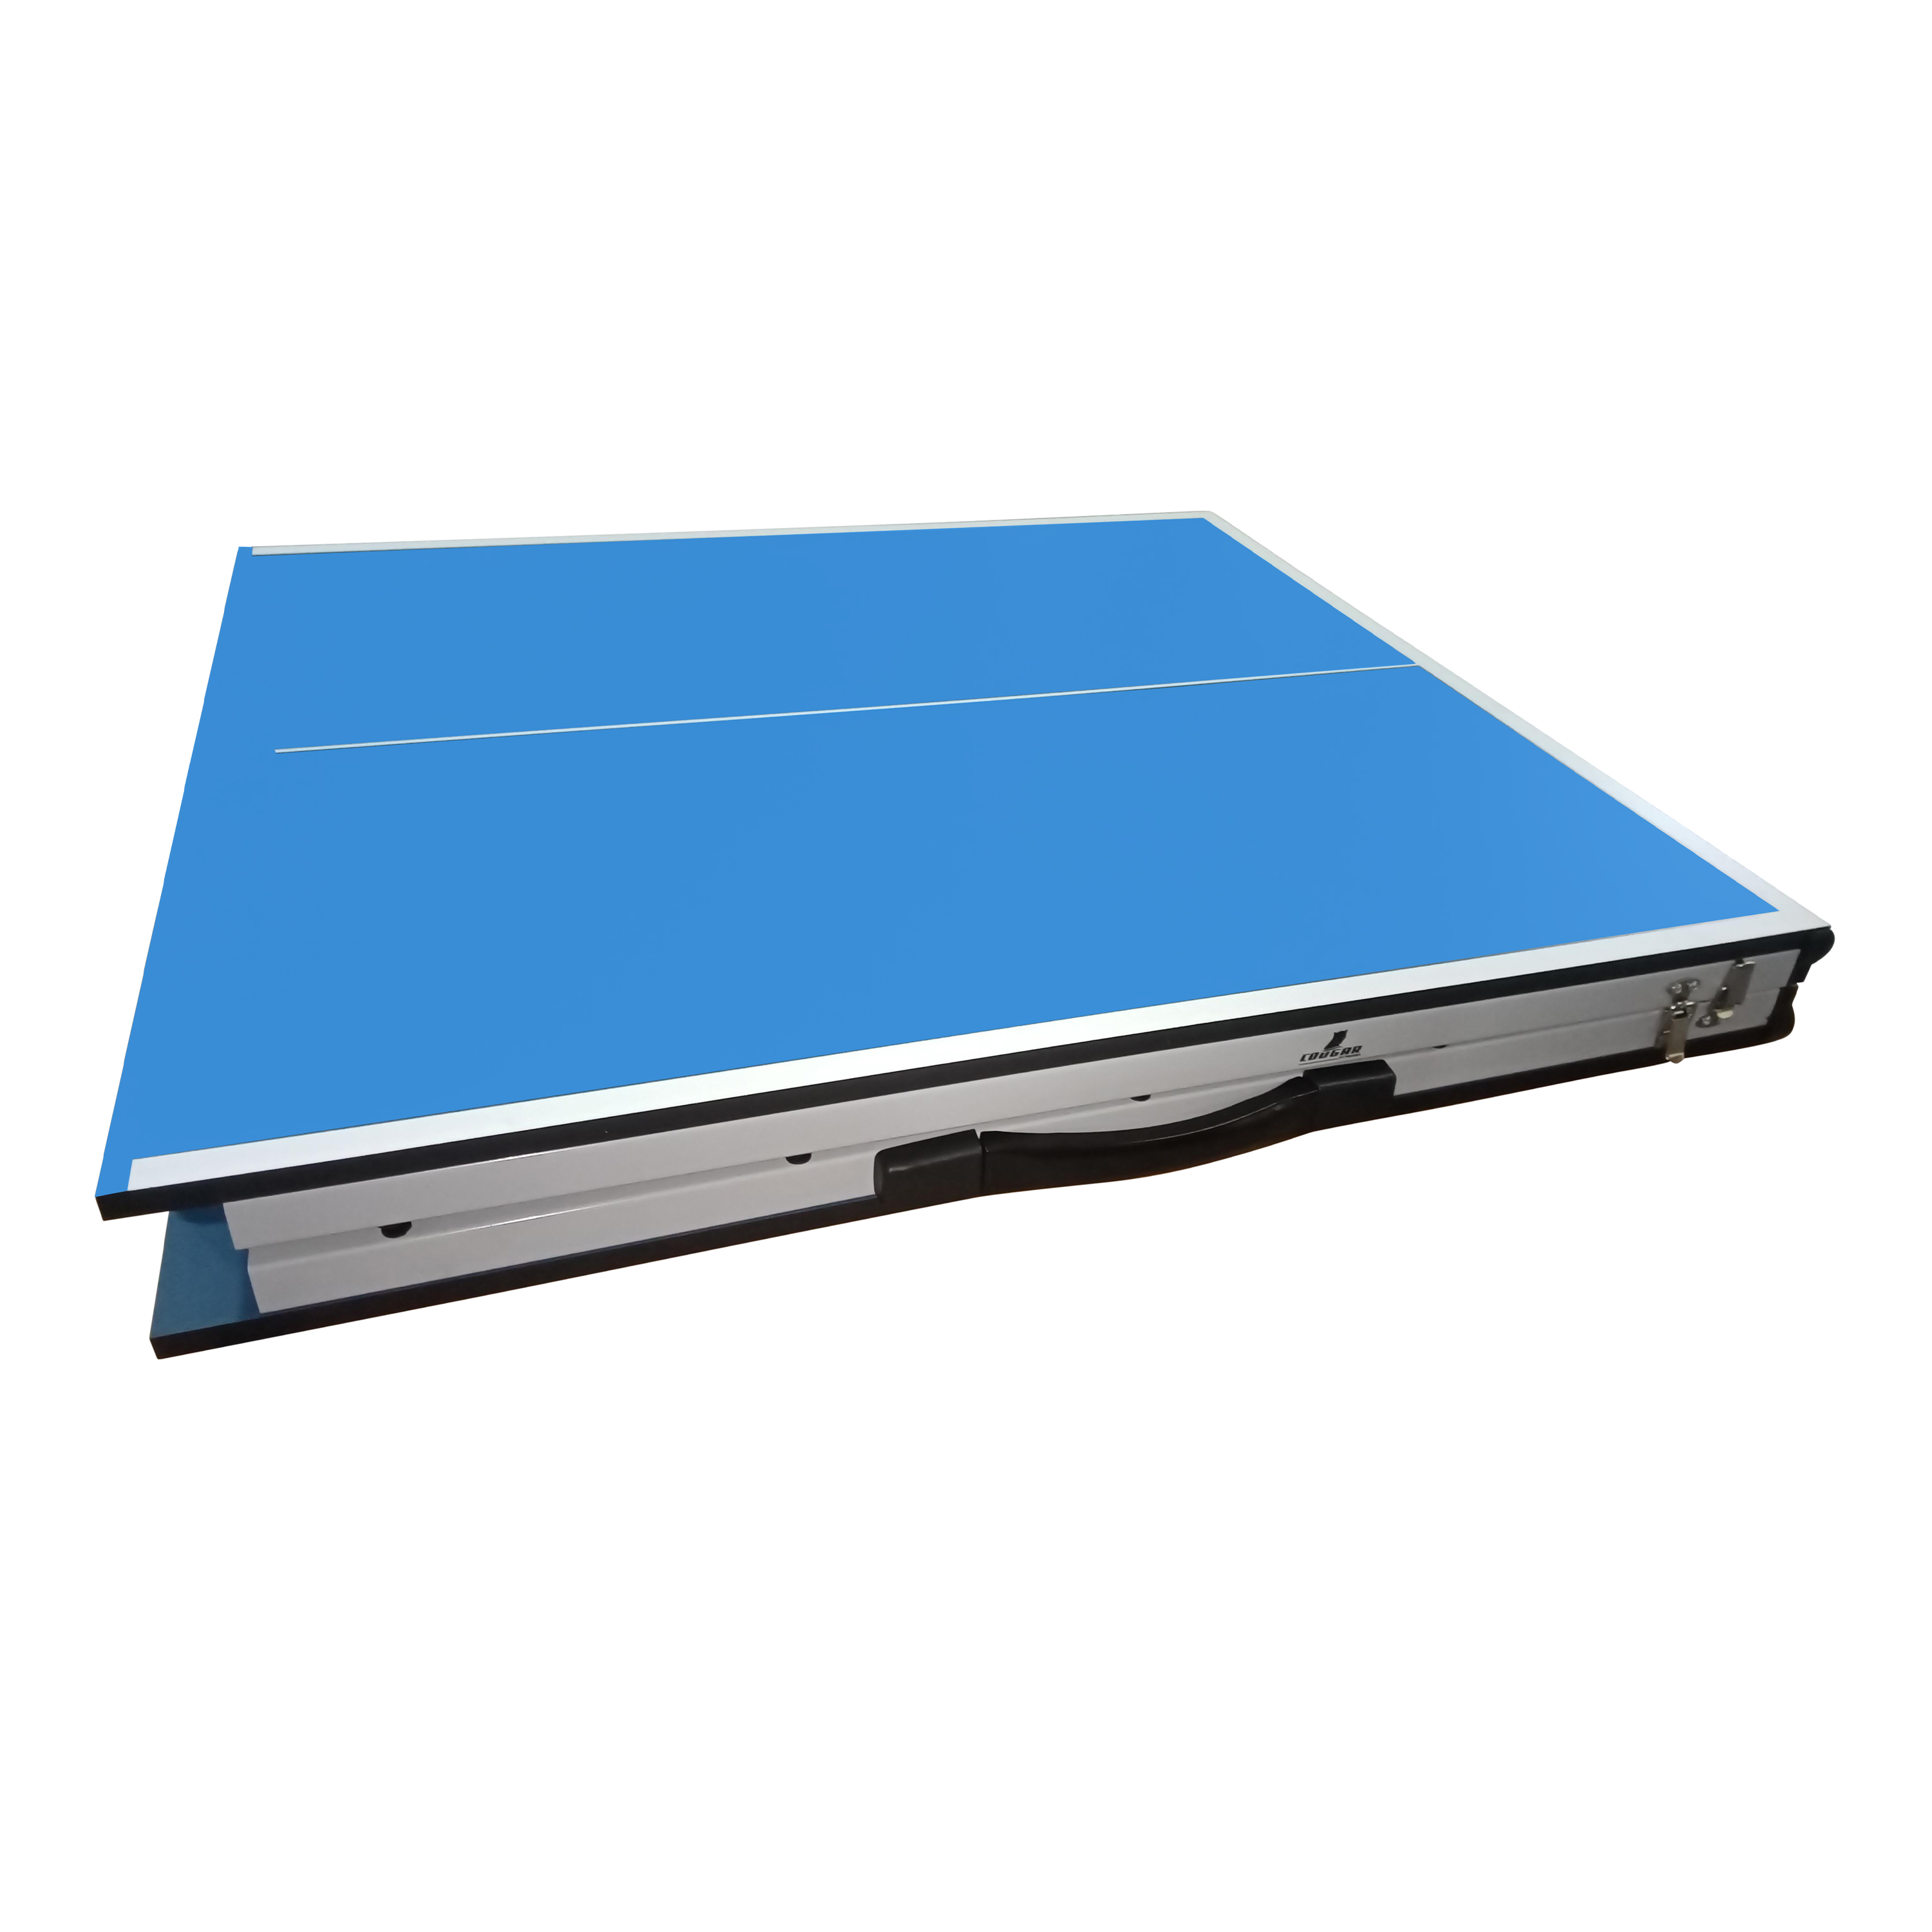 Cougar Table de Ping Pong Mini 1500 Basic portable Bleu